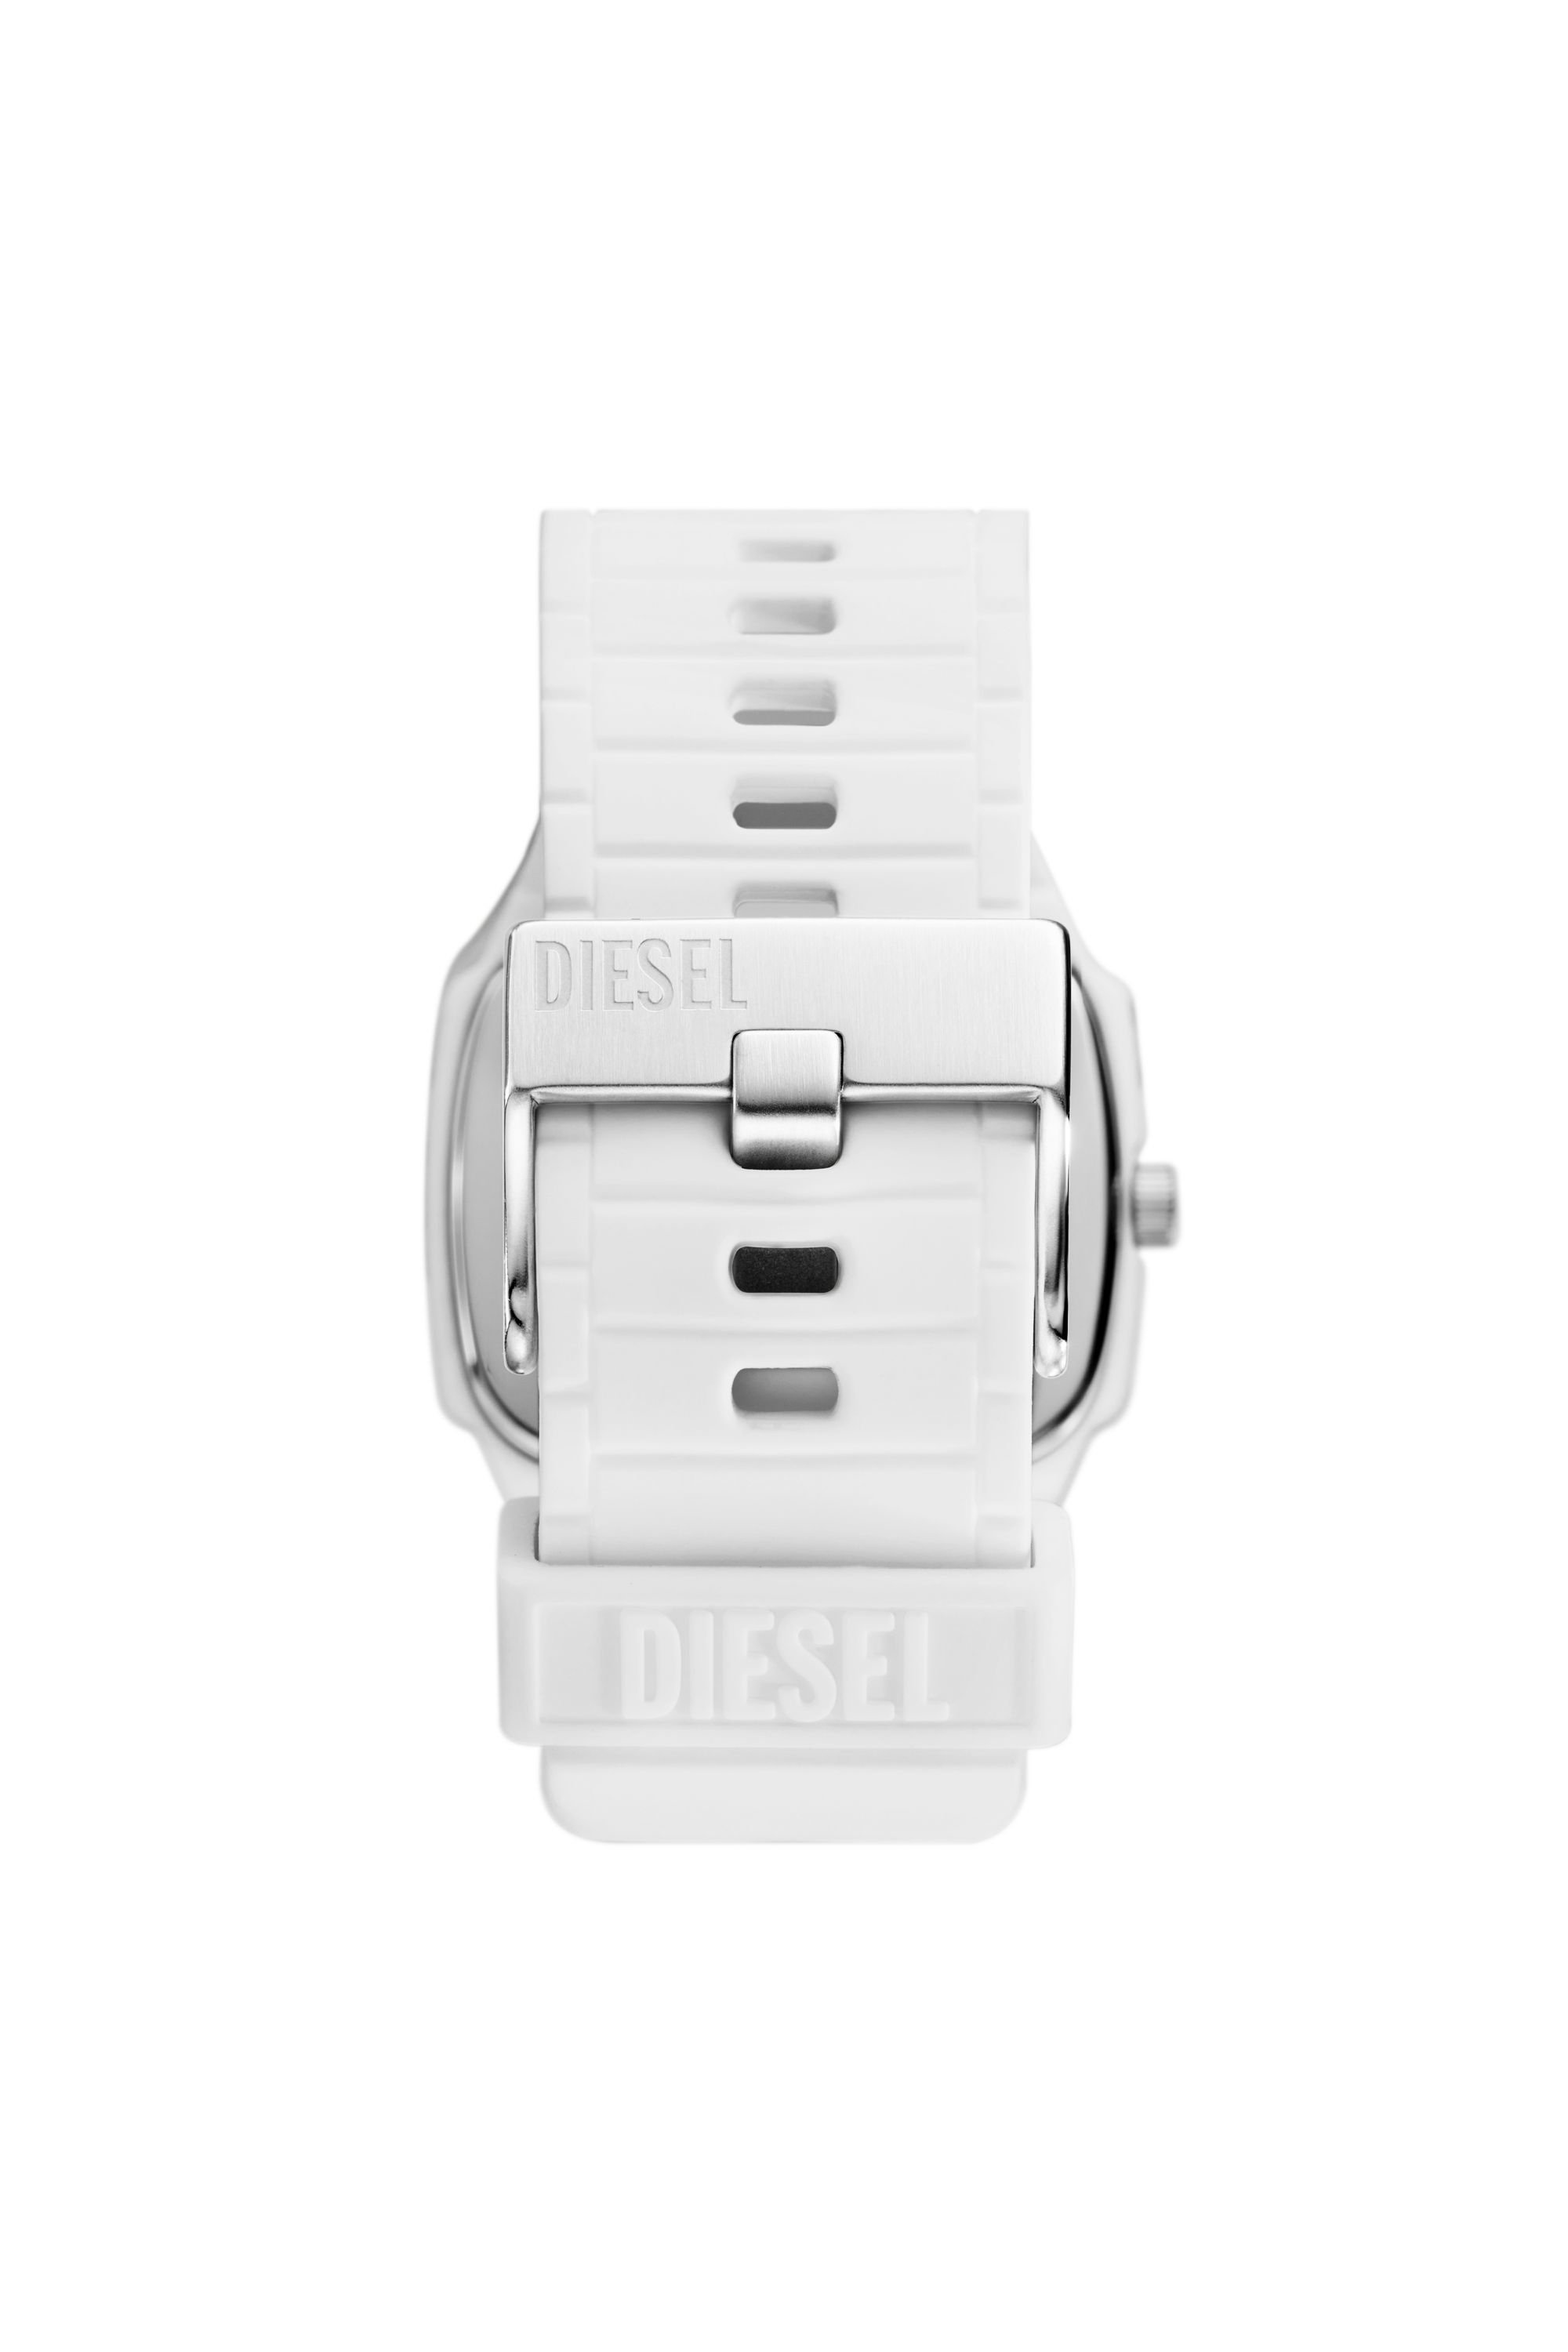 Diesel - DZ2204, Bianco - Image 2